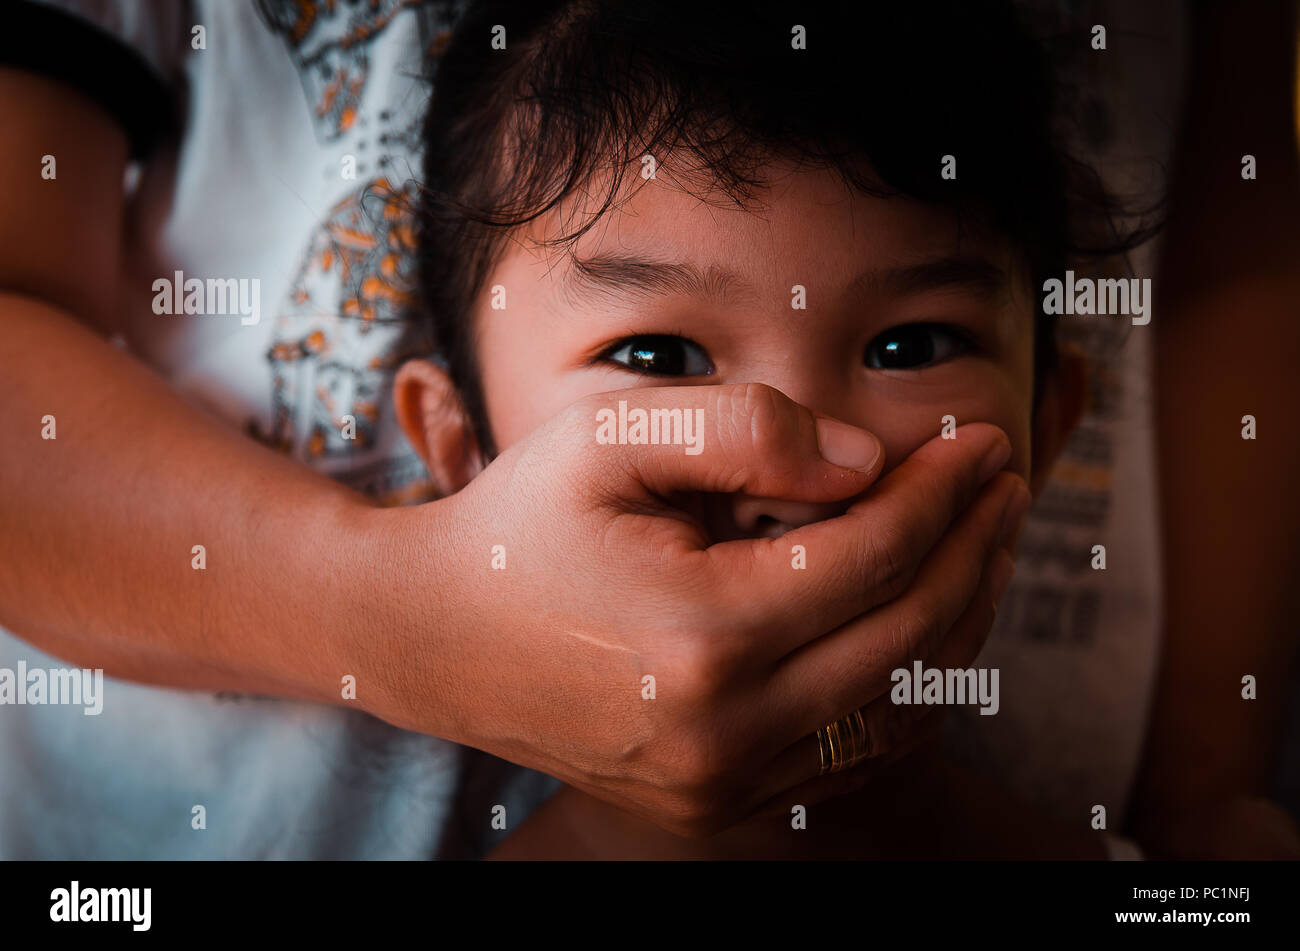 Image conceptuelle des abus envers les enfants avec des mains adultes couvrant la bouche de la jeune fille. Banque D'Images